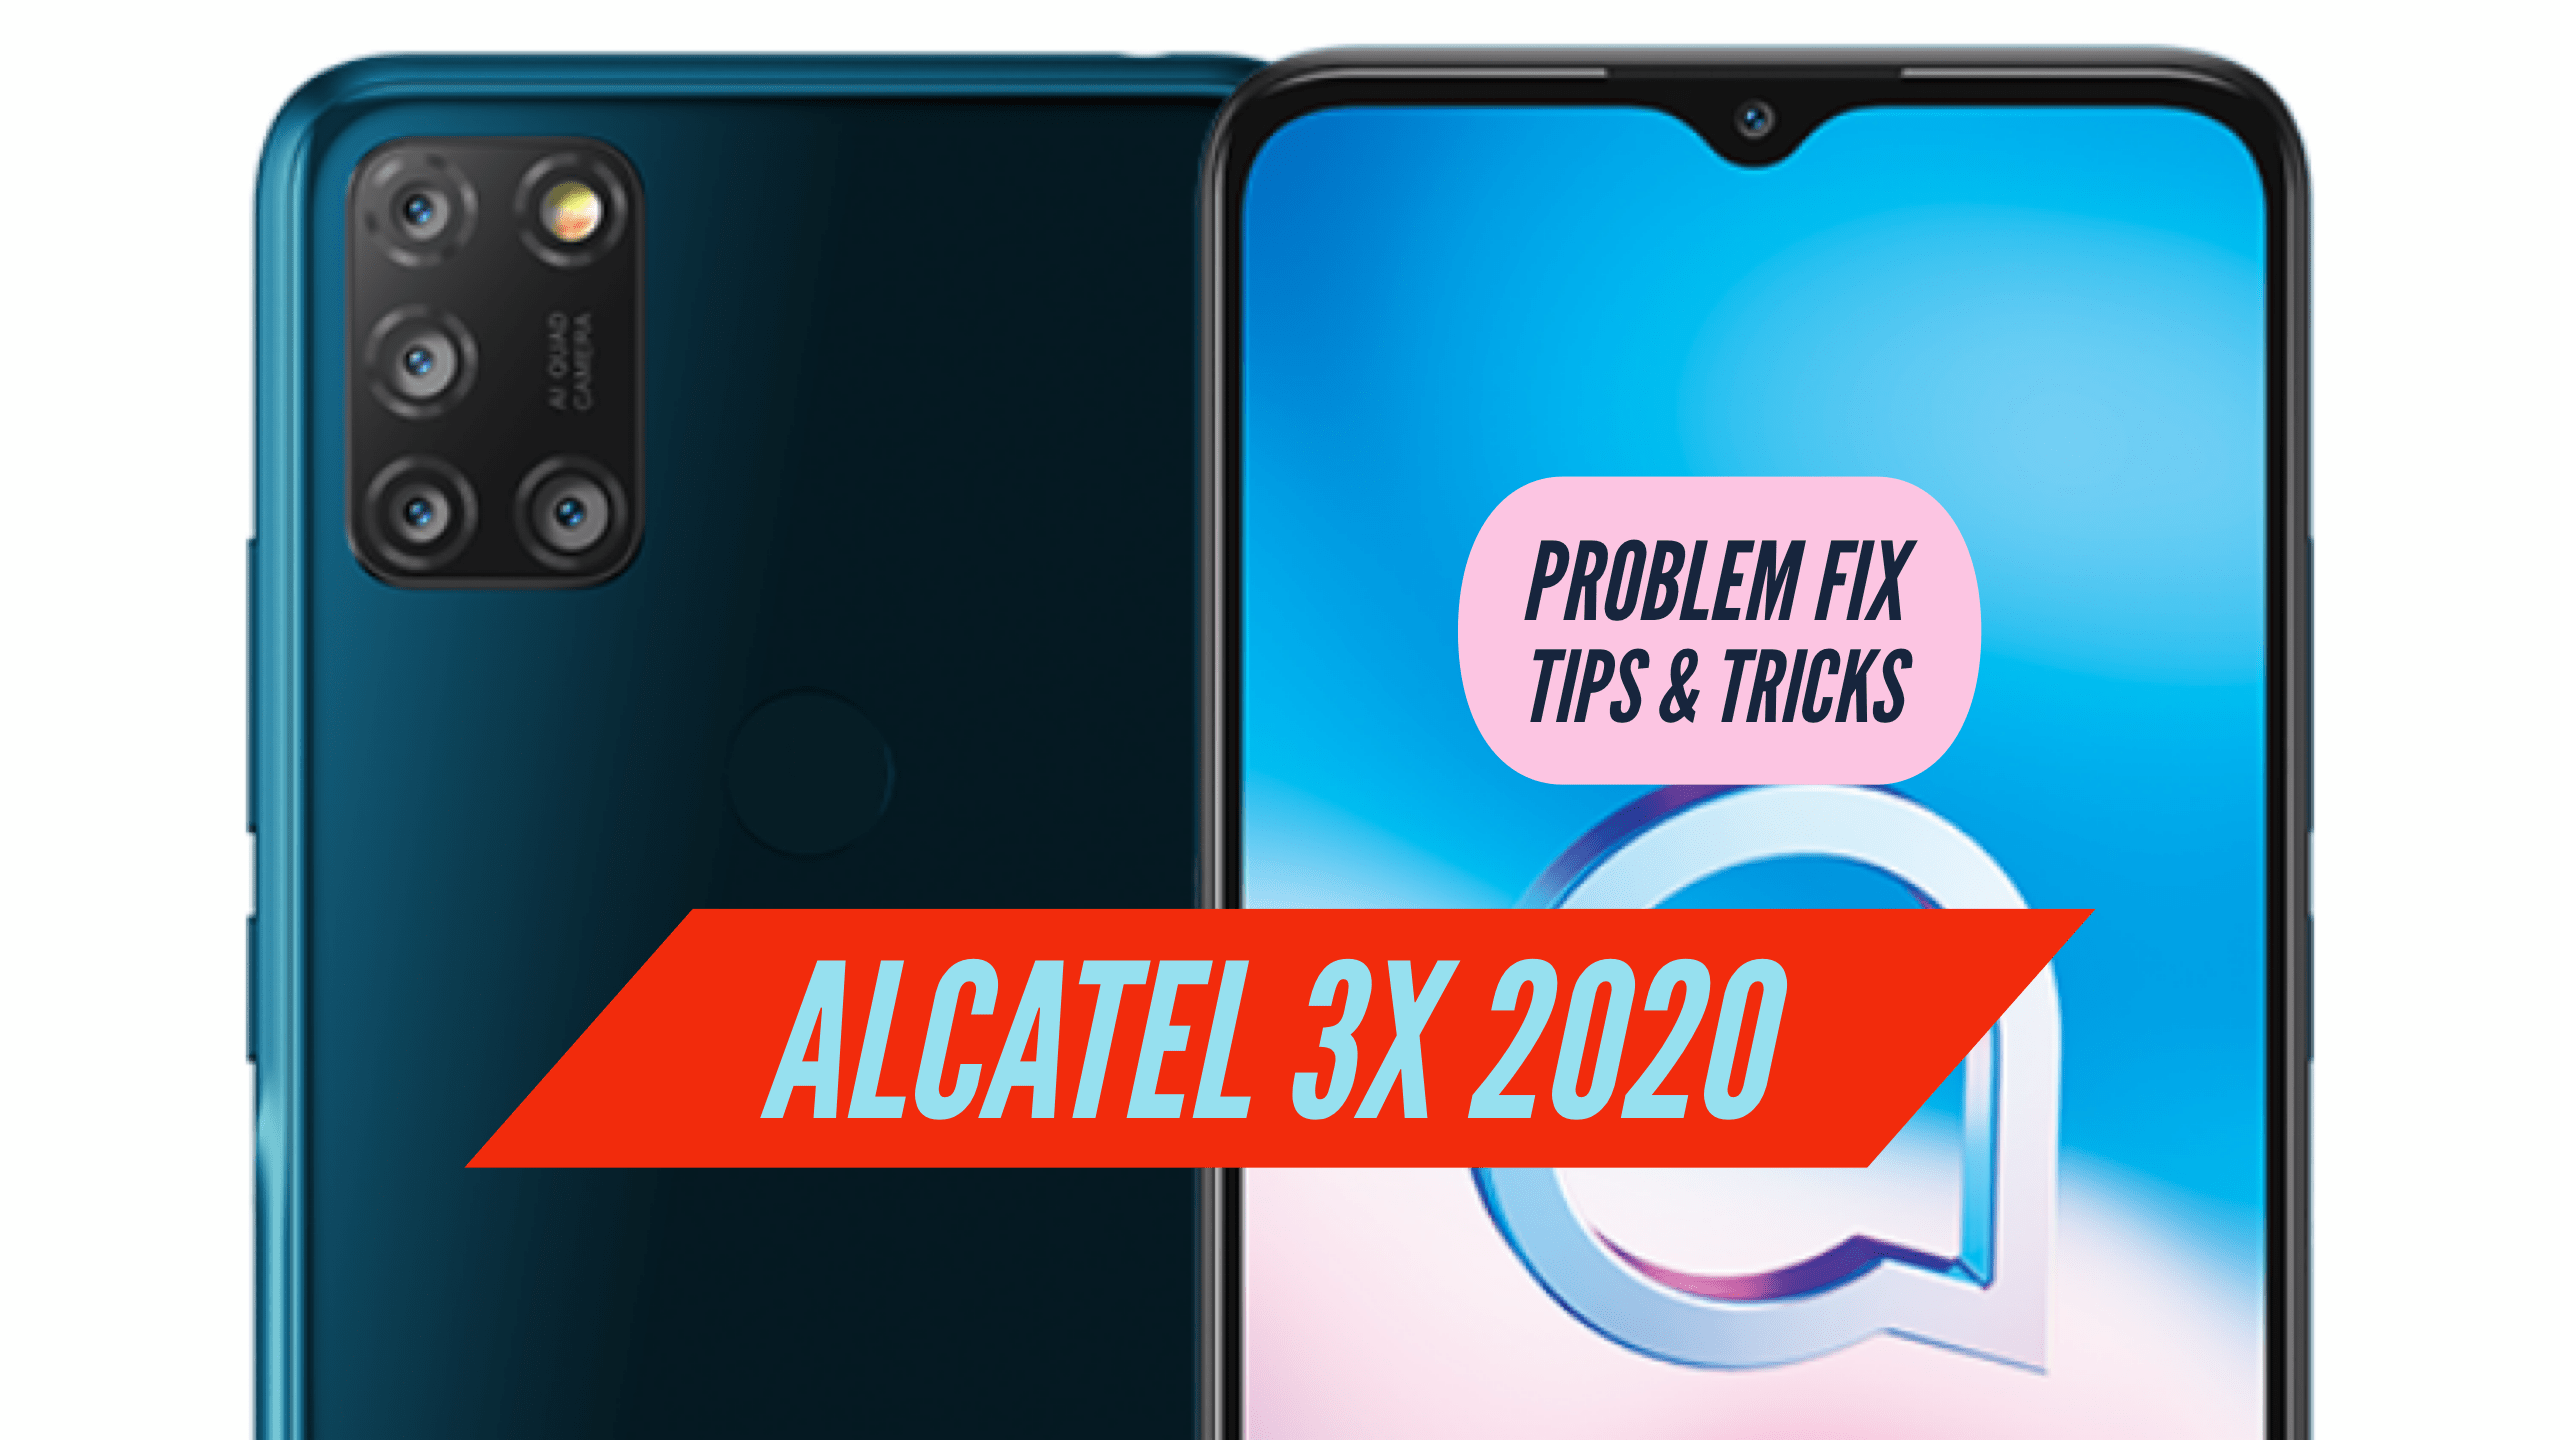 Alcatel 3X 2020 Problem Fix Issues Solution TIPS & TRICKS